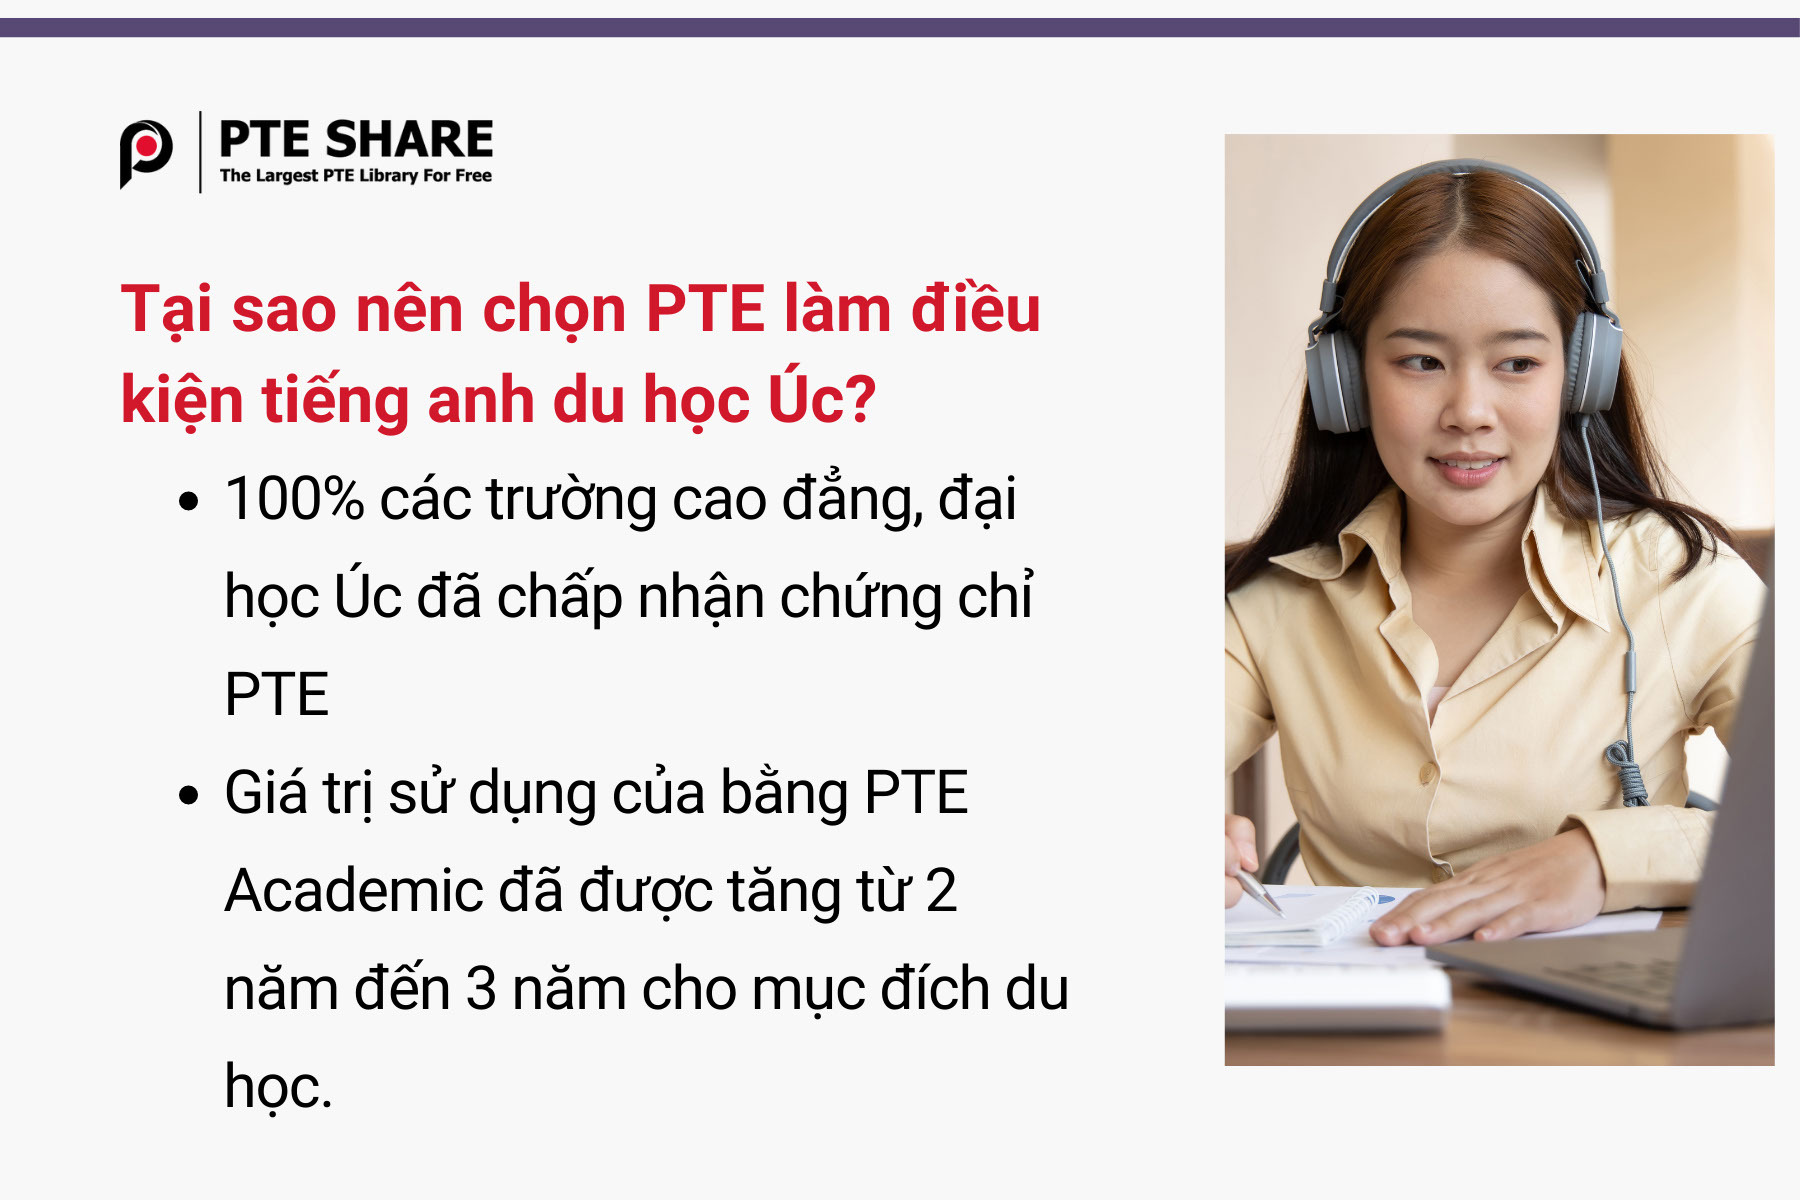 Tại sao nên chọn PTE làm điều kiện tiếng anh du học Úc?